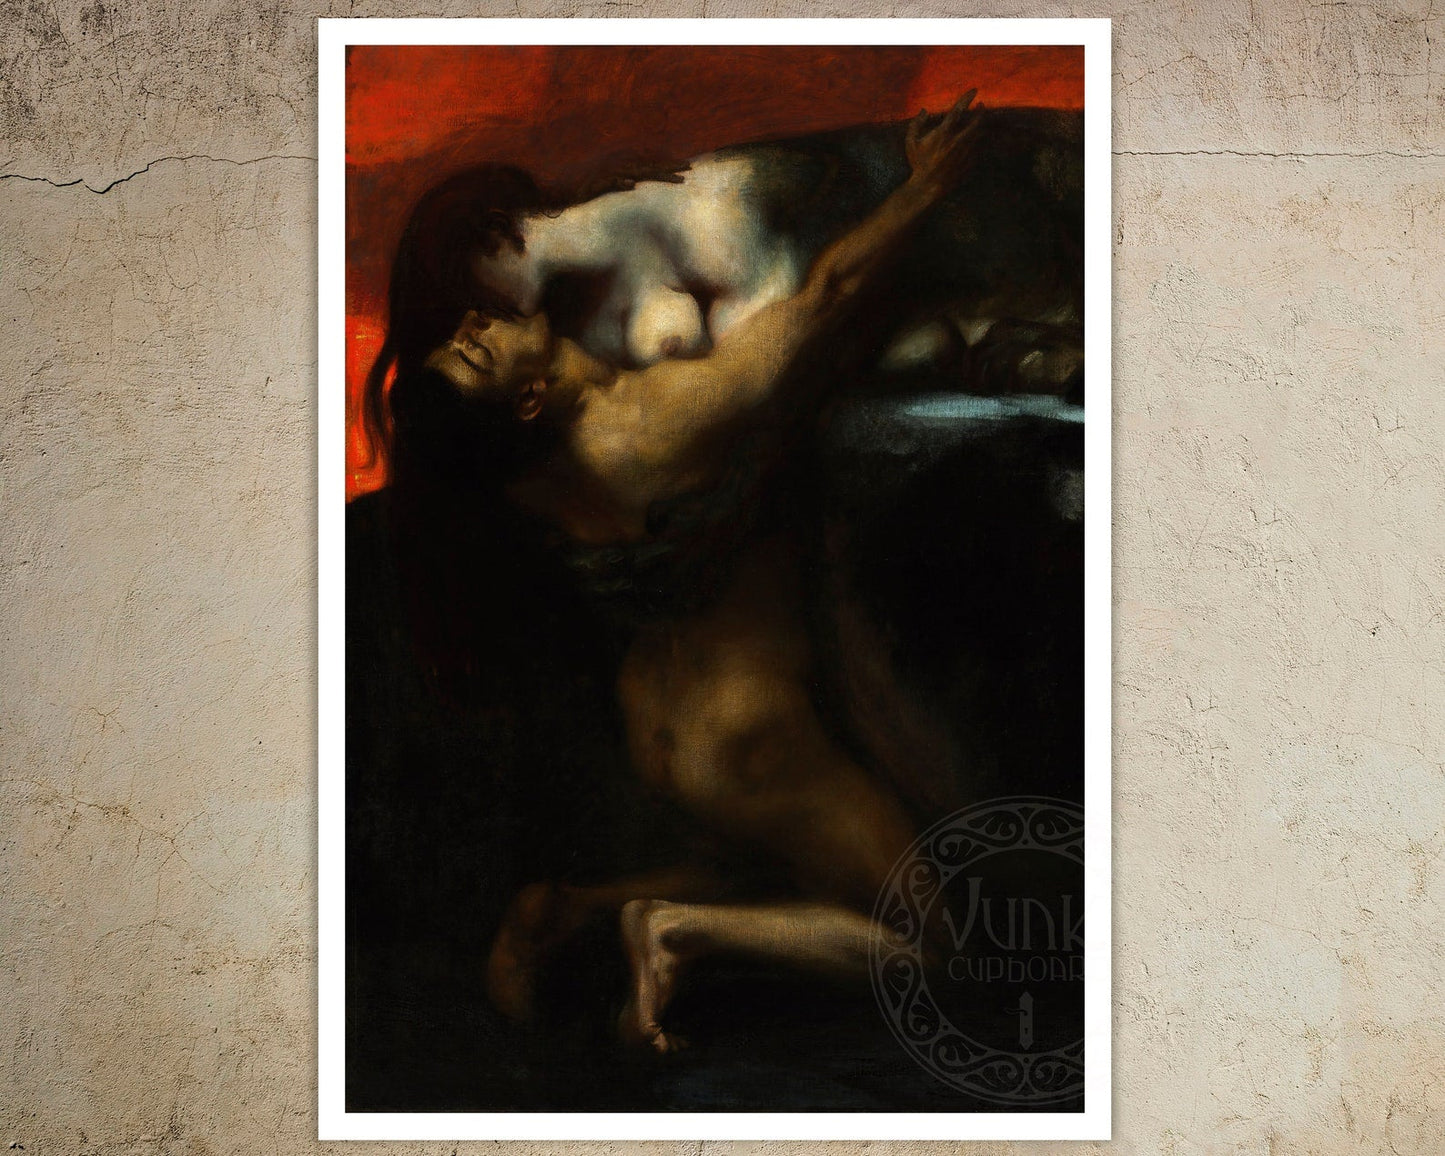 Franz Von Stuck "The Kiss of The Sphinx" (c.1895) - Mabon Gallery